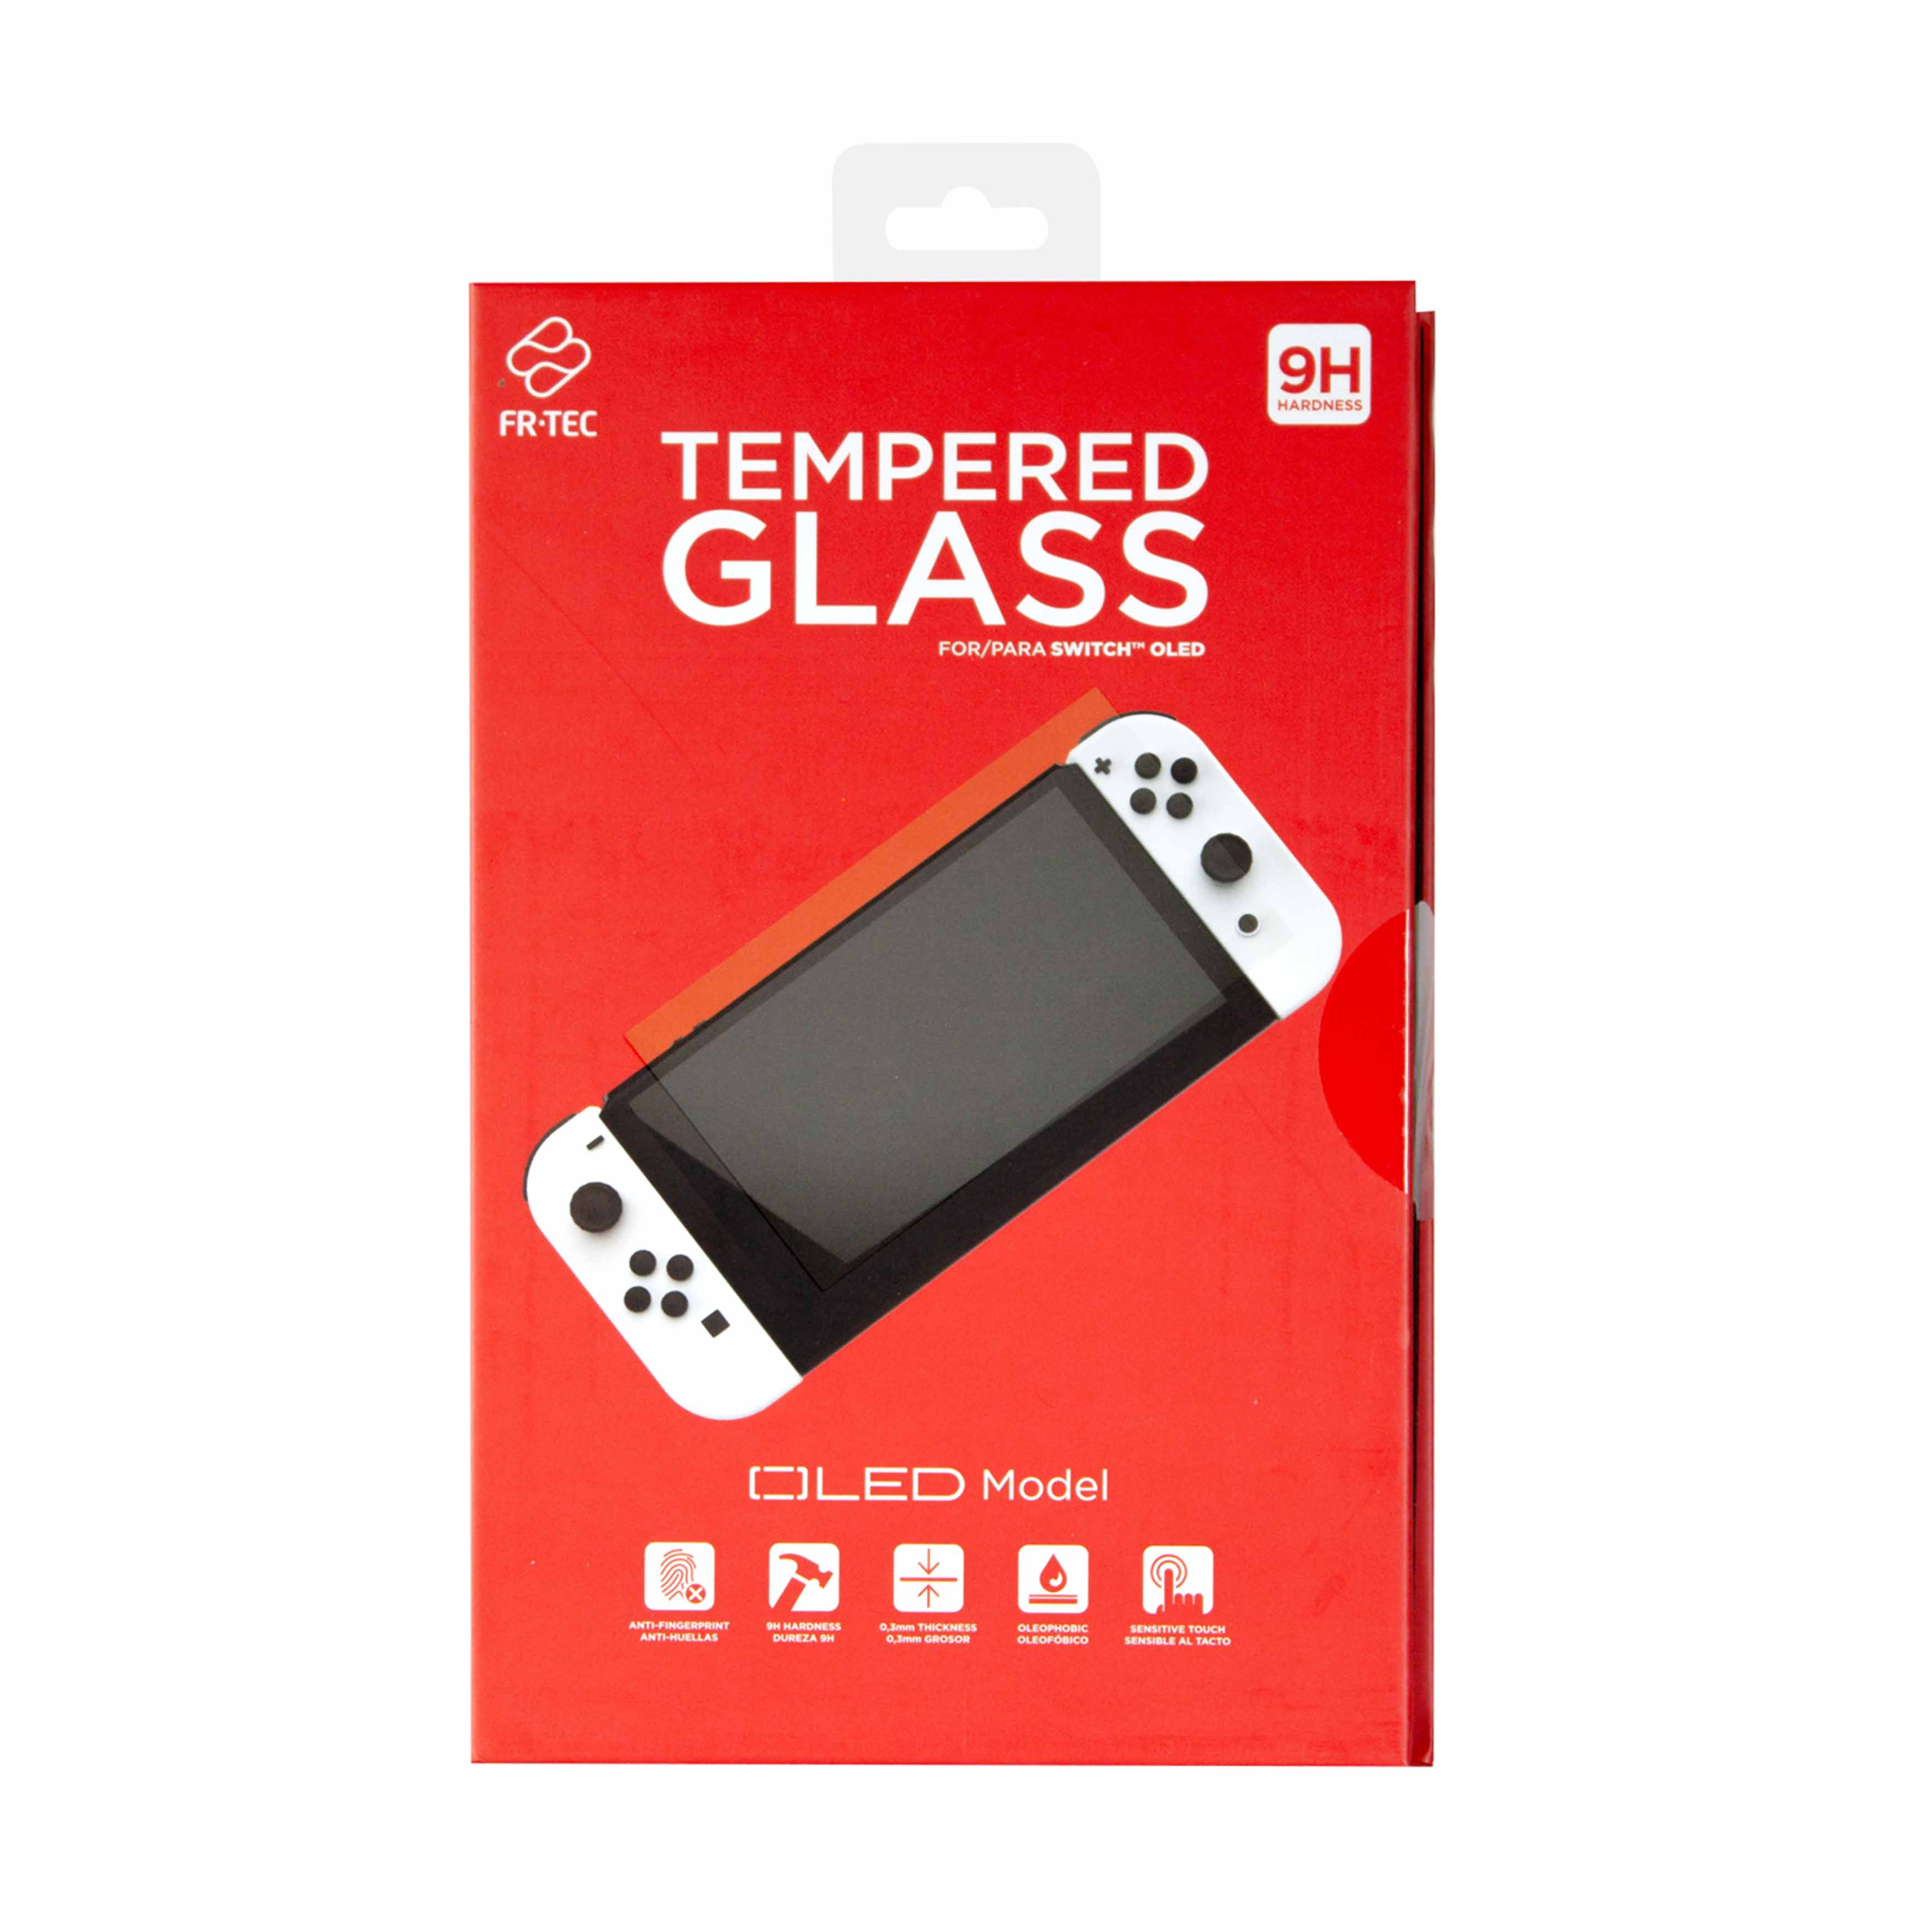 SDTEK 2x Verre Trempé pour Nintendo Switch OLED Protection écran